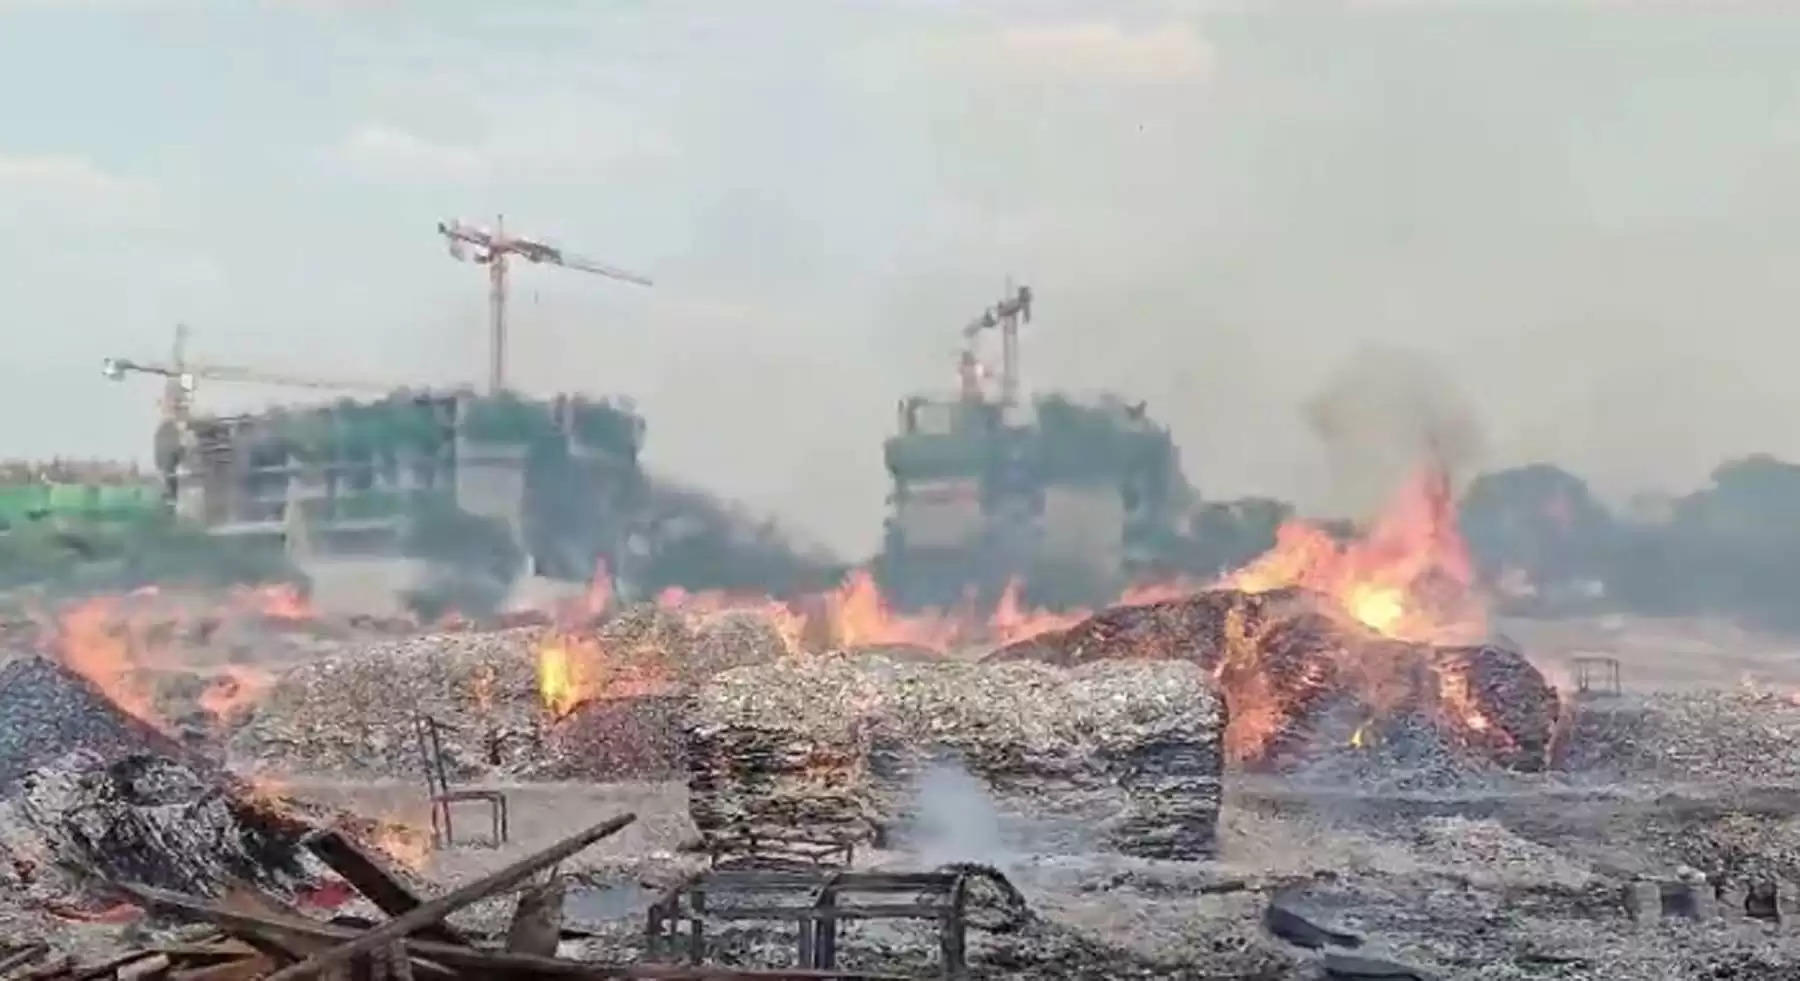   द्वारका एक्सप्रेस-वे किनारे लकड़ी के गोदाम में भडक़ी आग